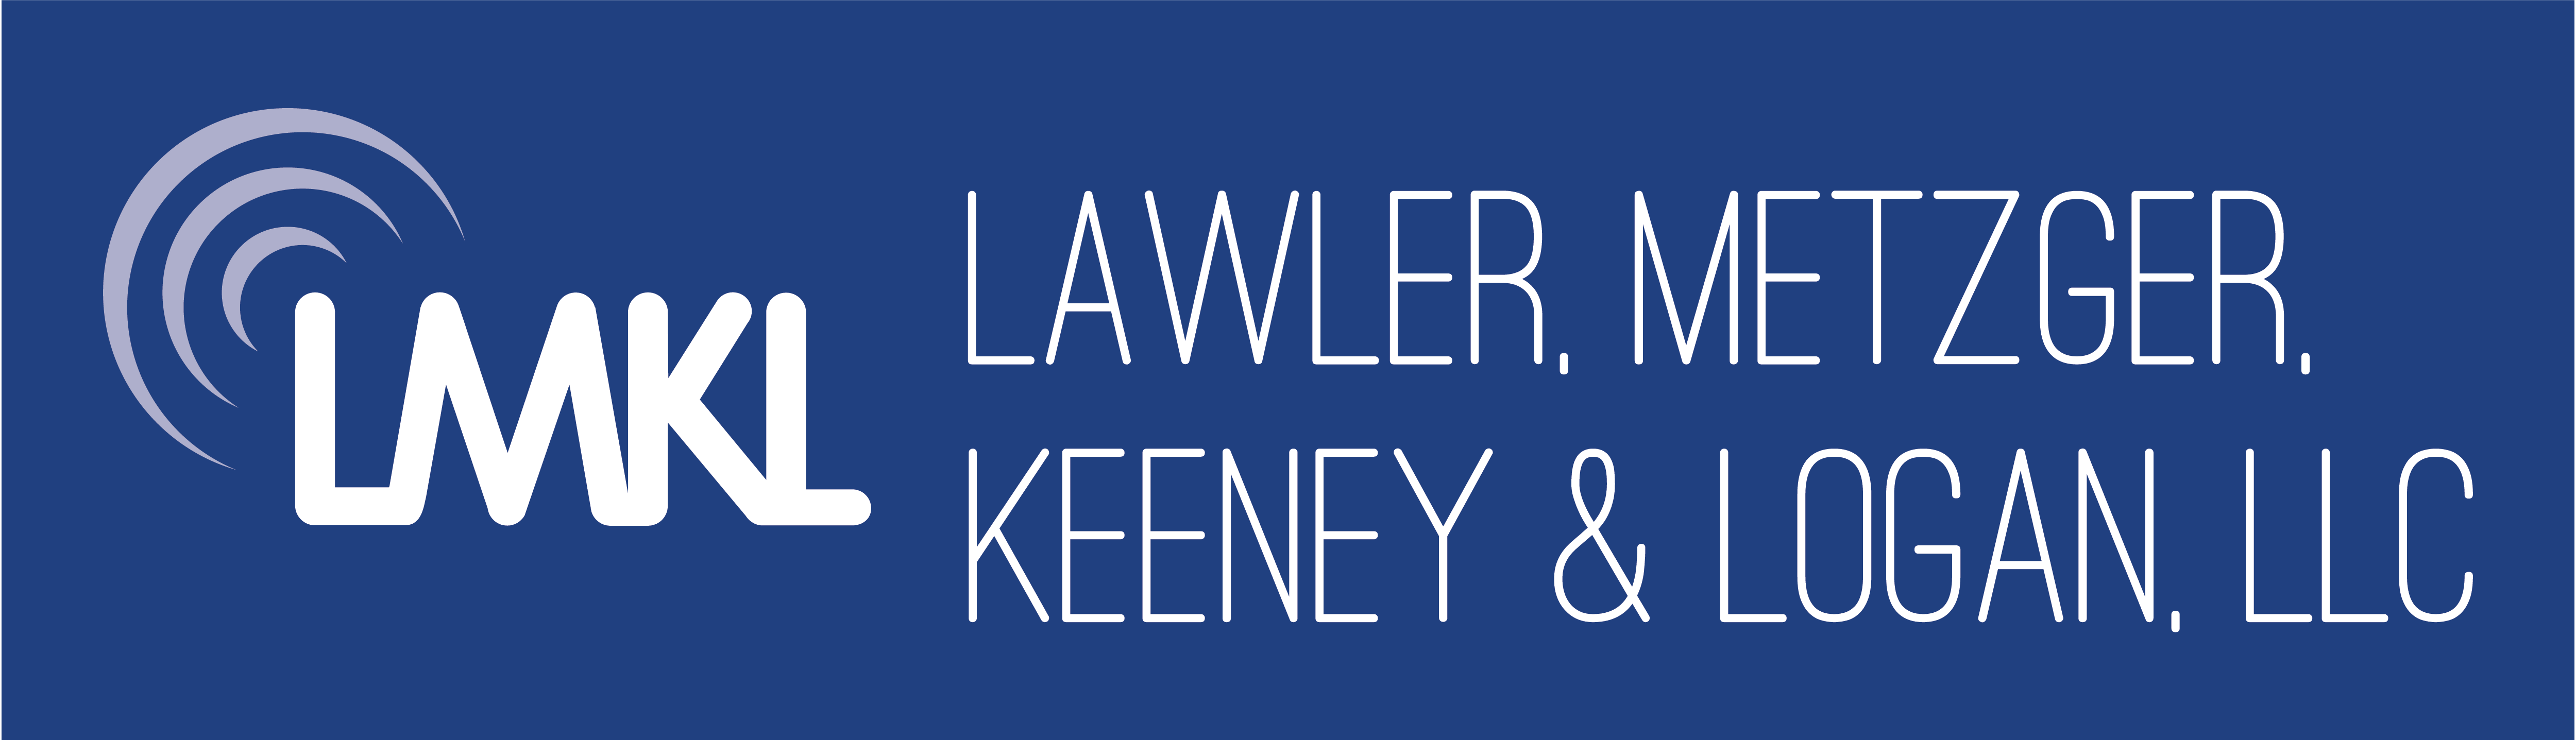 Lawler Metzger Keeney & Logan